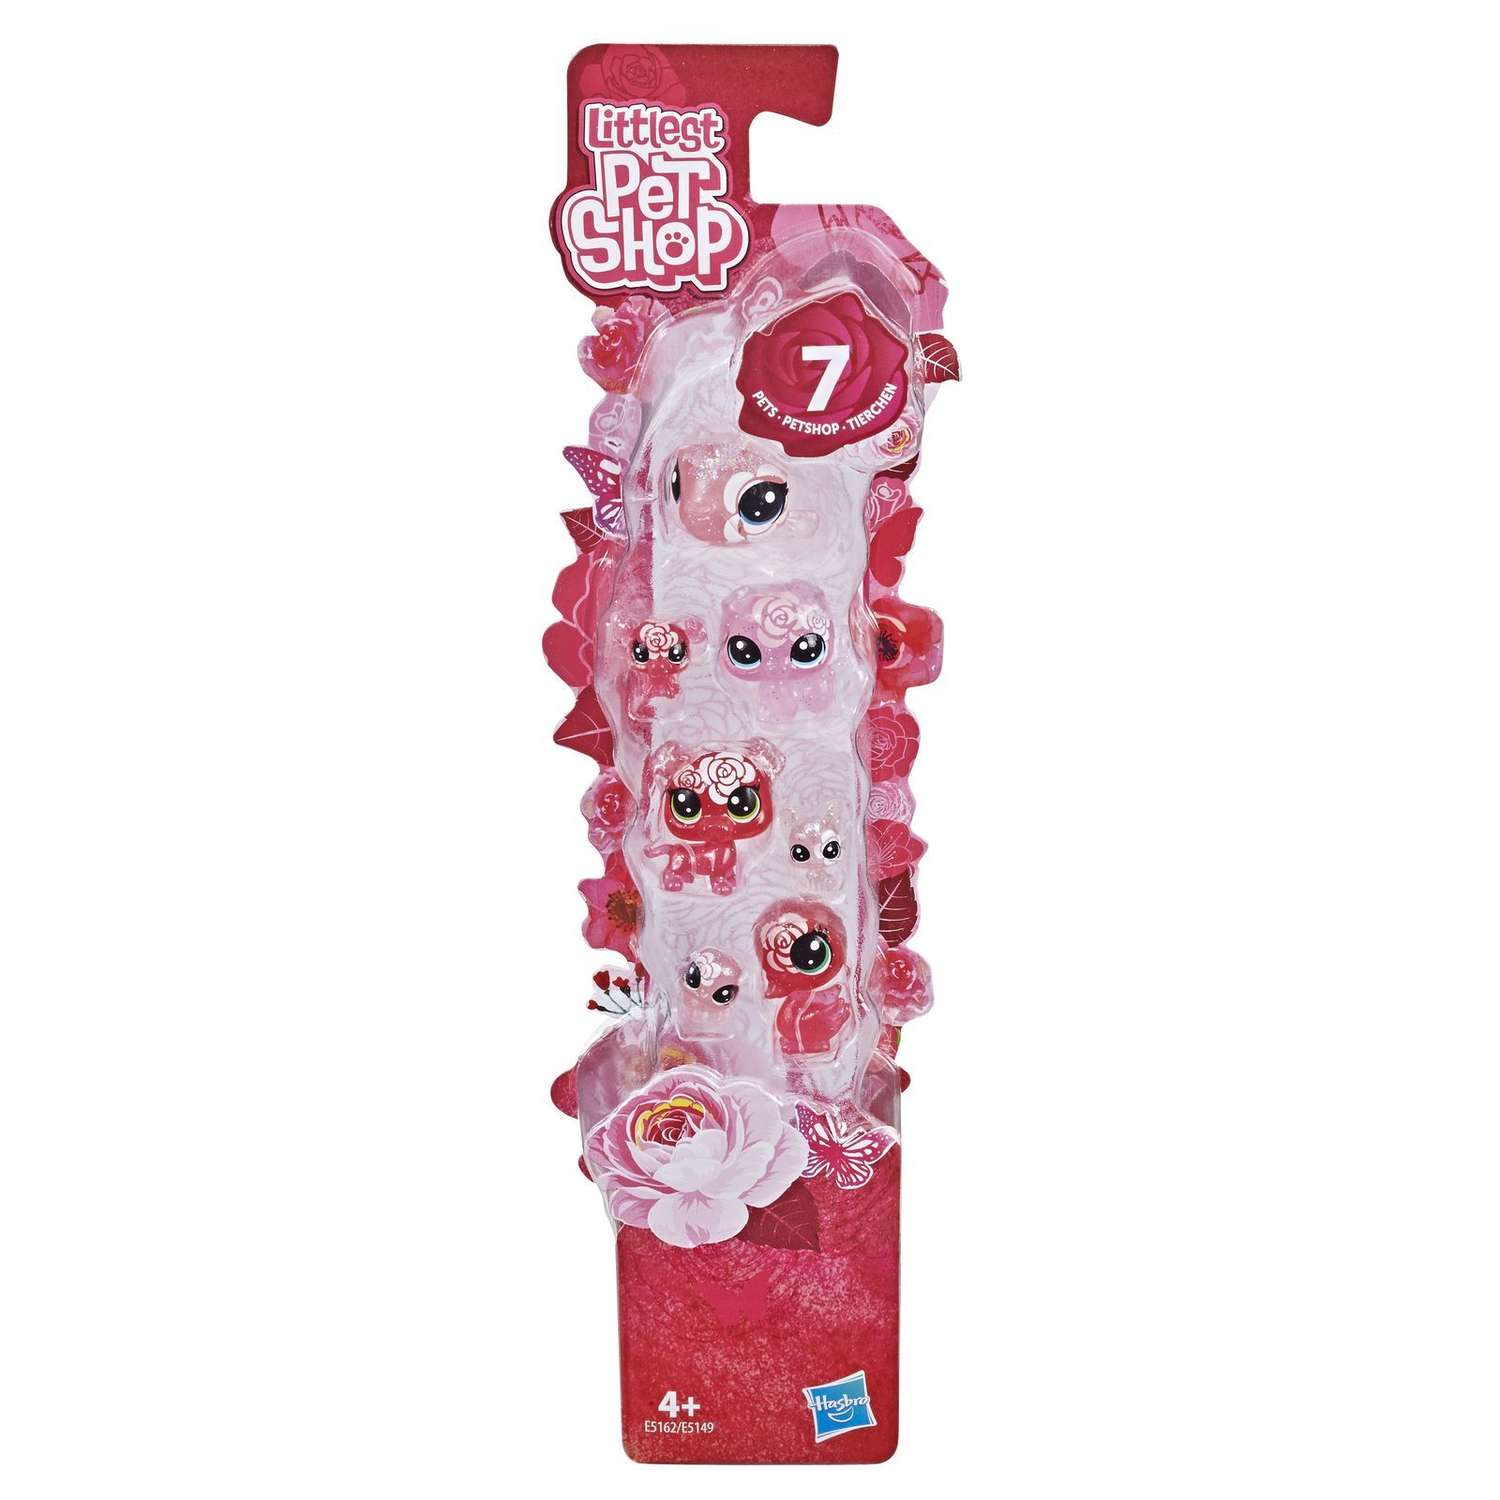 Набор игровой Littlest Pet Shop 7 цветочных петов Роза E5162EU4 - фото 2